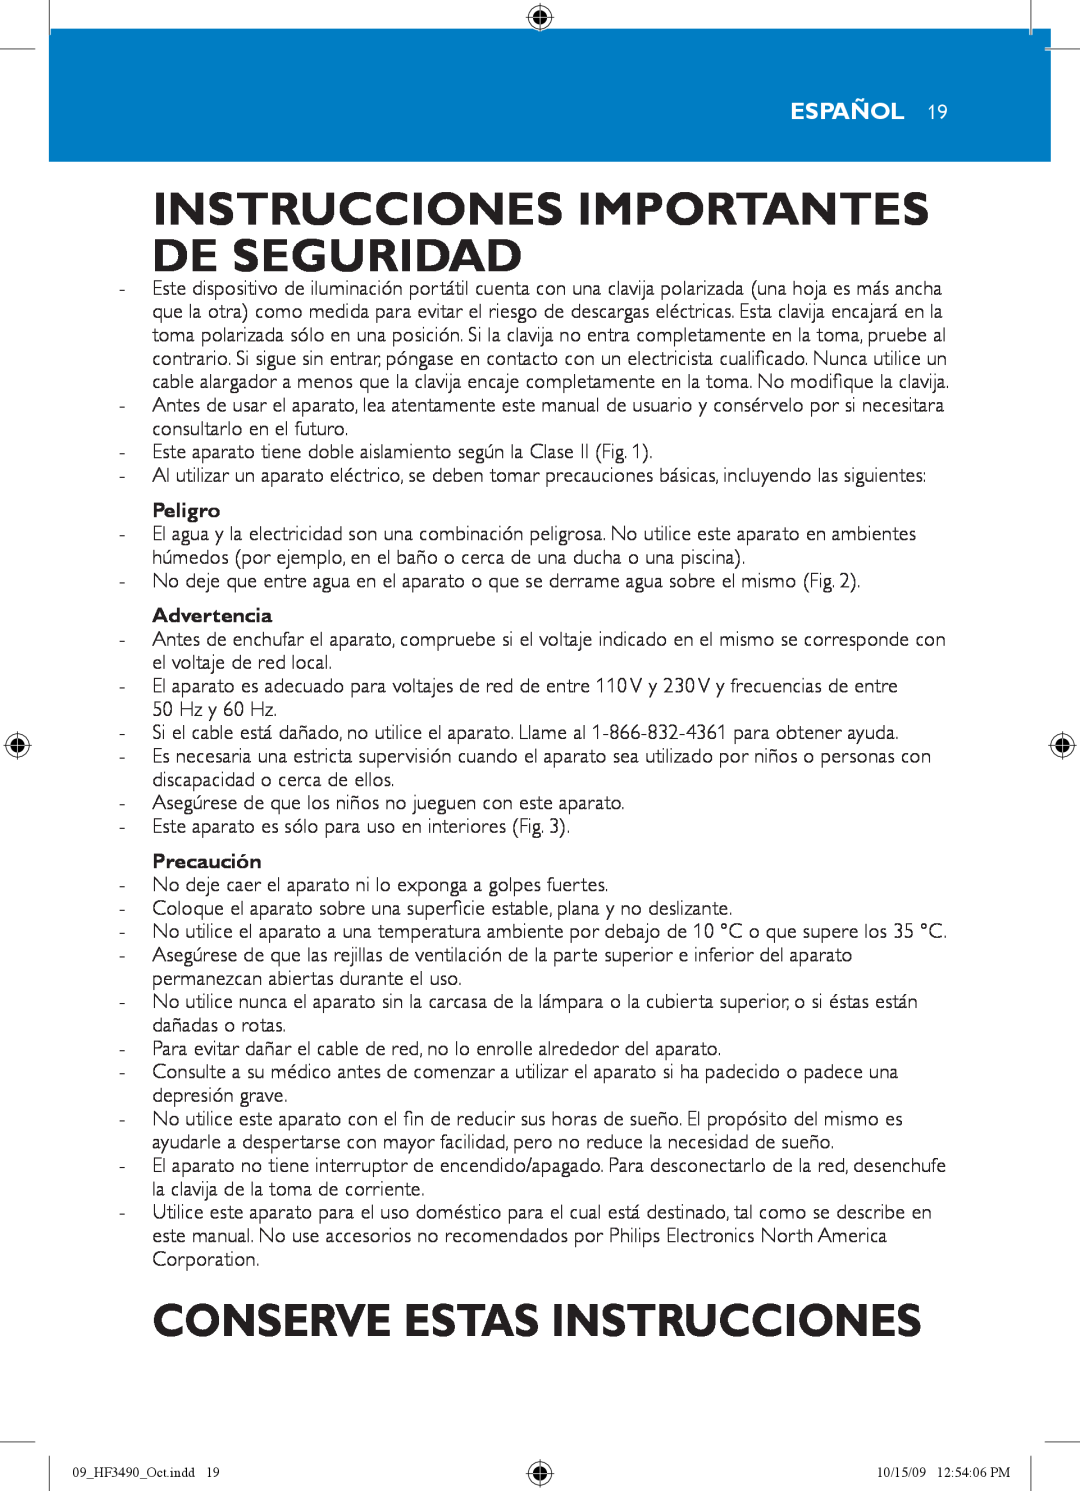 Philips HF3490/60 Instrucciones Importantes De Seguridad, Conserve Estas Instrucciones, Español, Peligro, Advertencia 